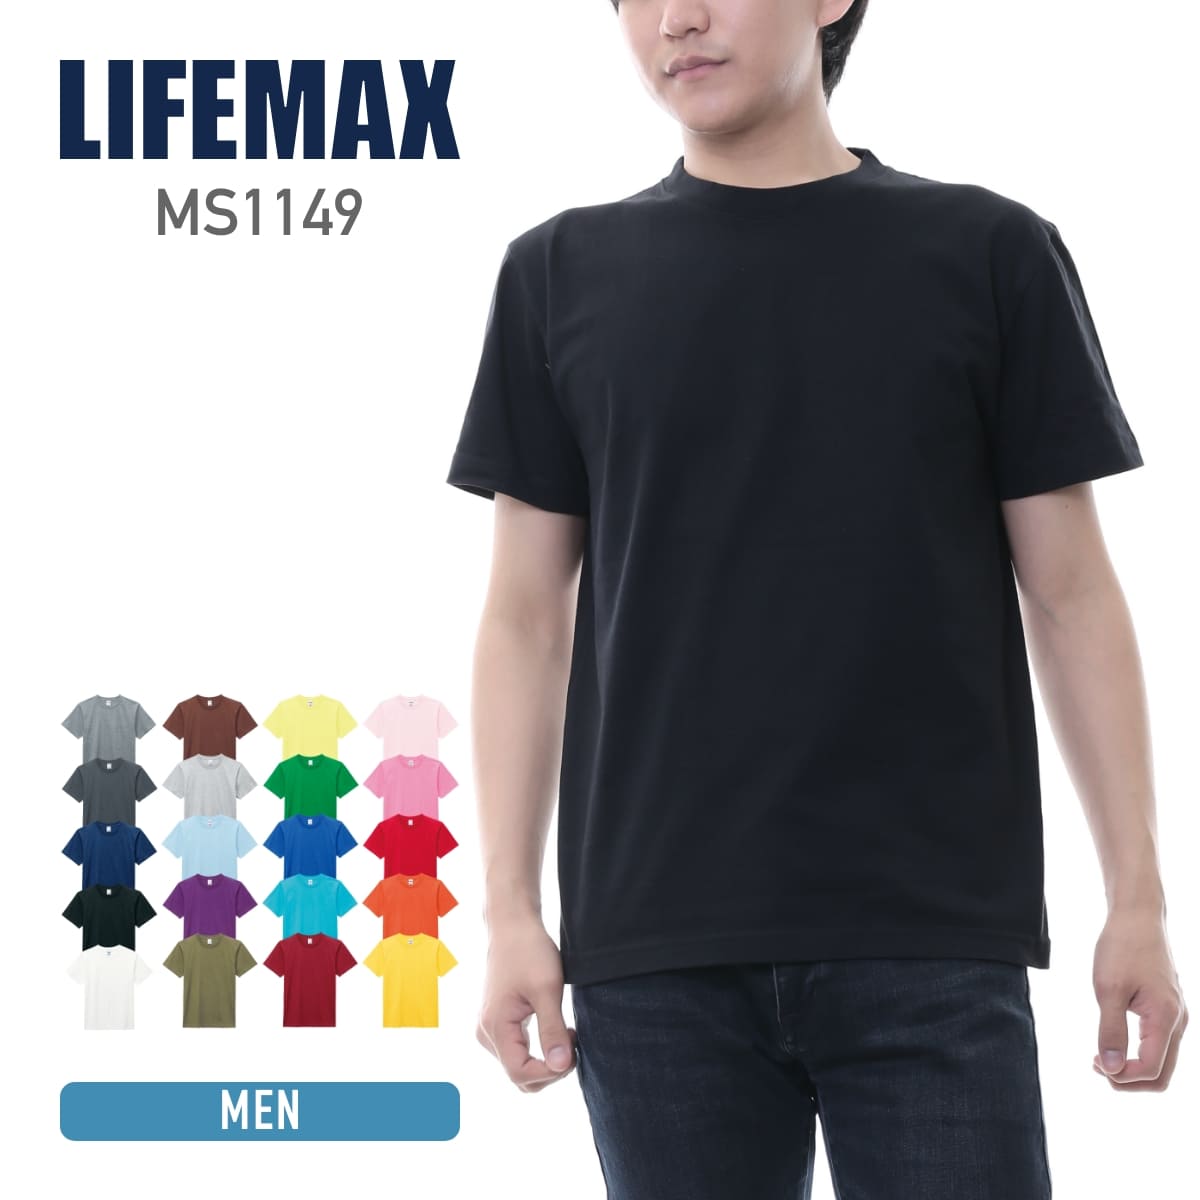 LIFEMAX(ライフマックス)激安通販 - Tshirt.stビジネス